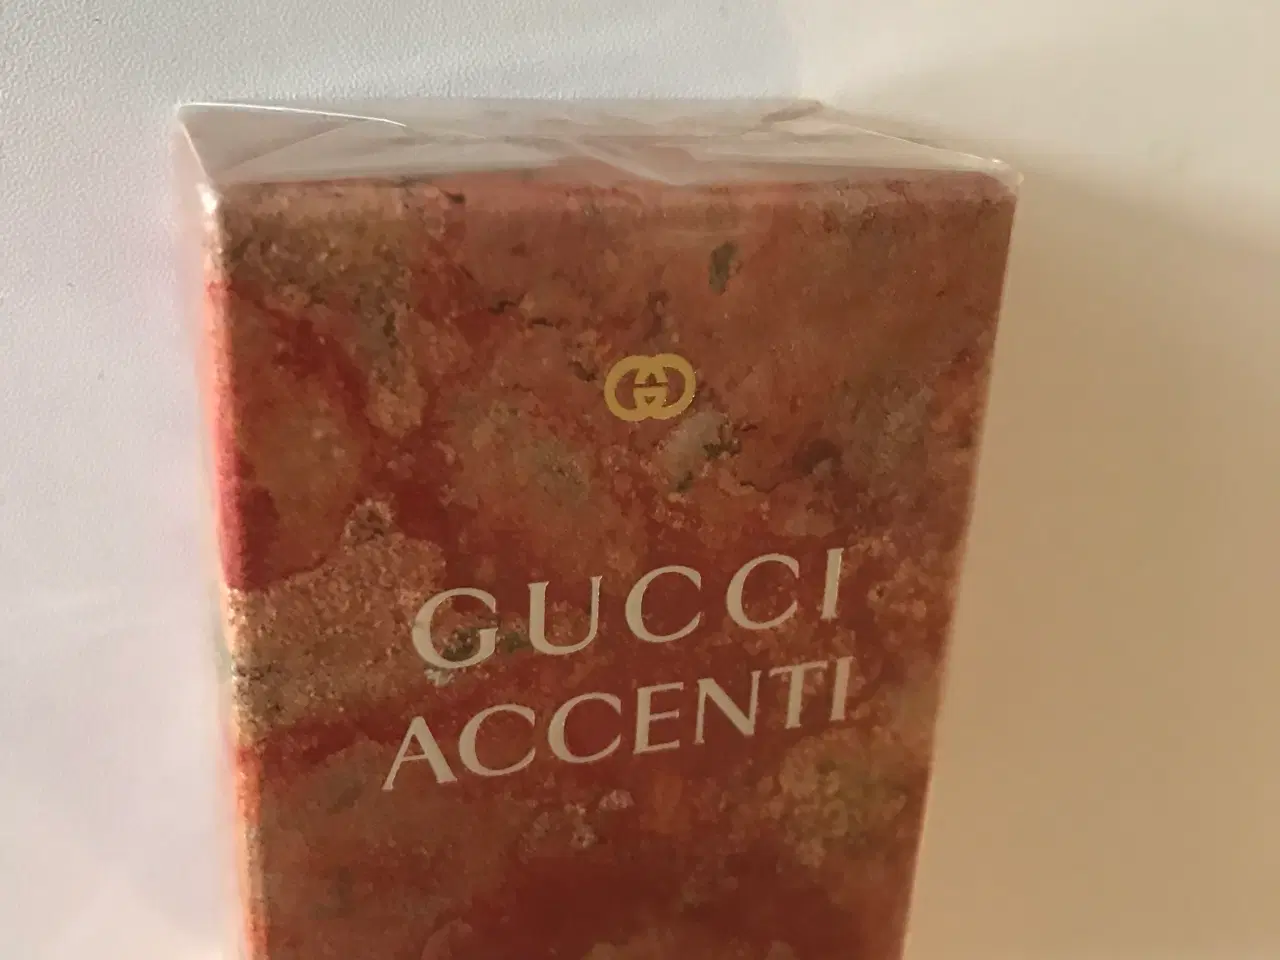 Billede 2 - Gucci accenti parfume